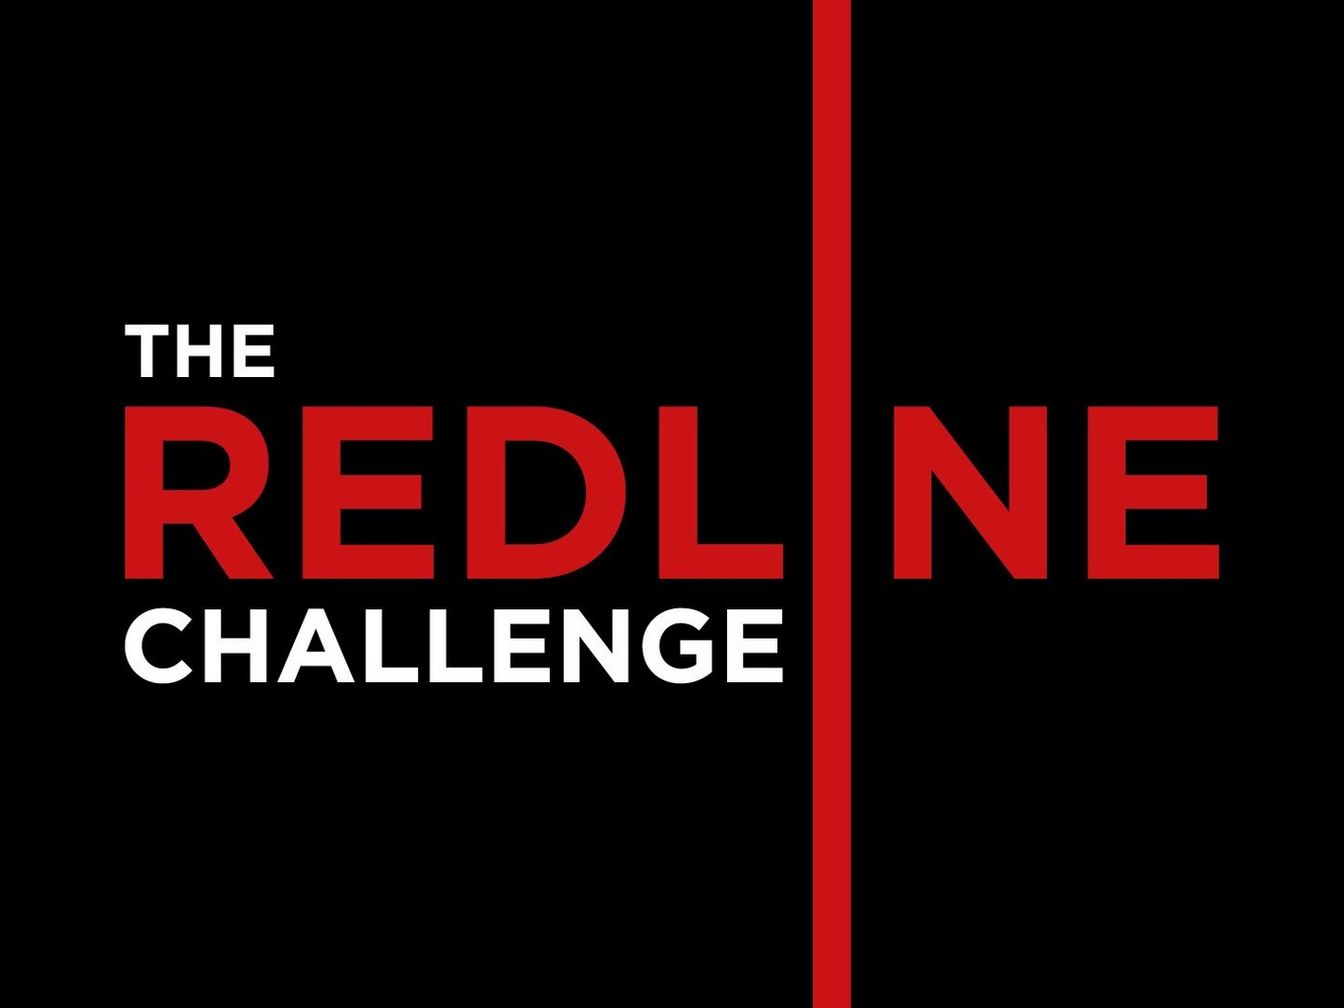 Redline-challenge-logo-dark-background